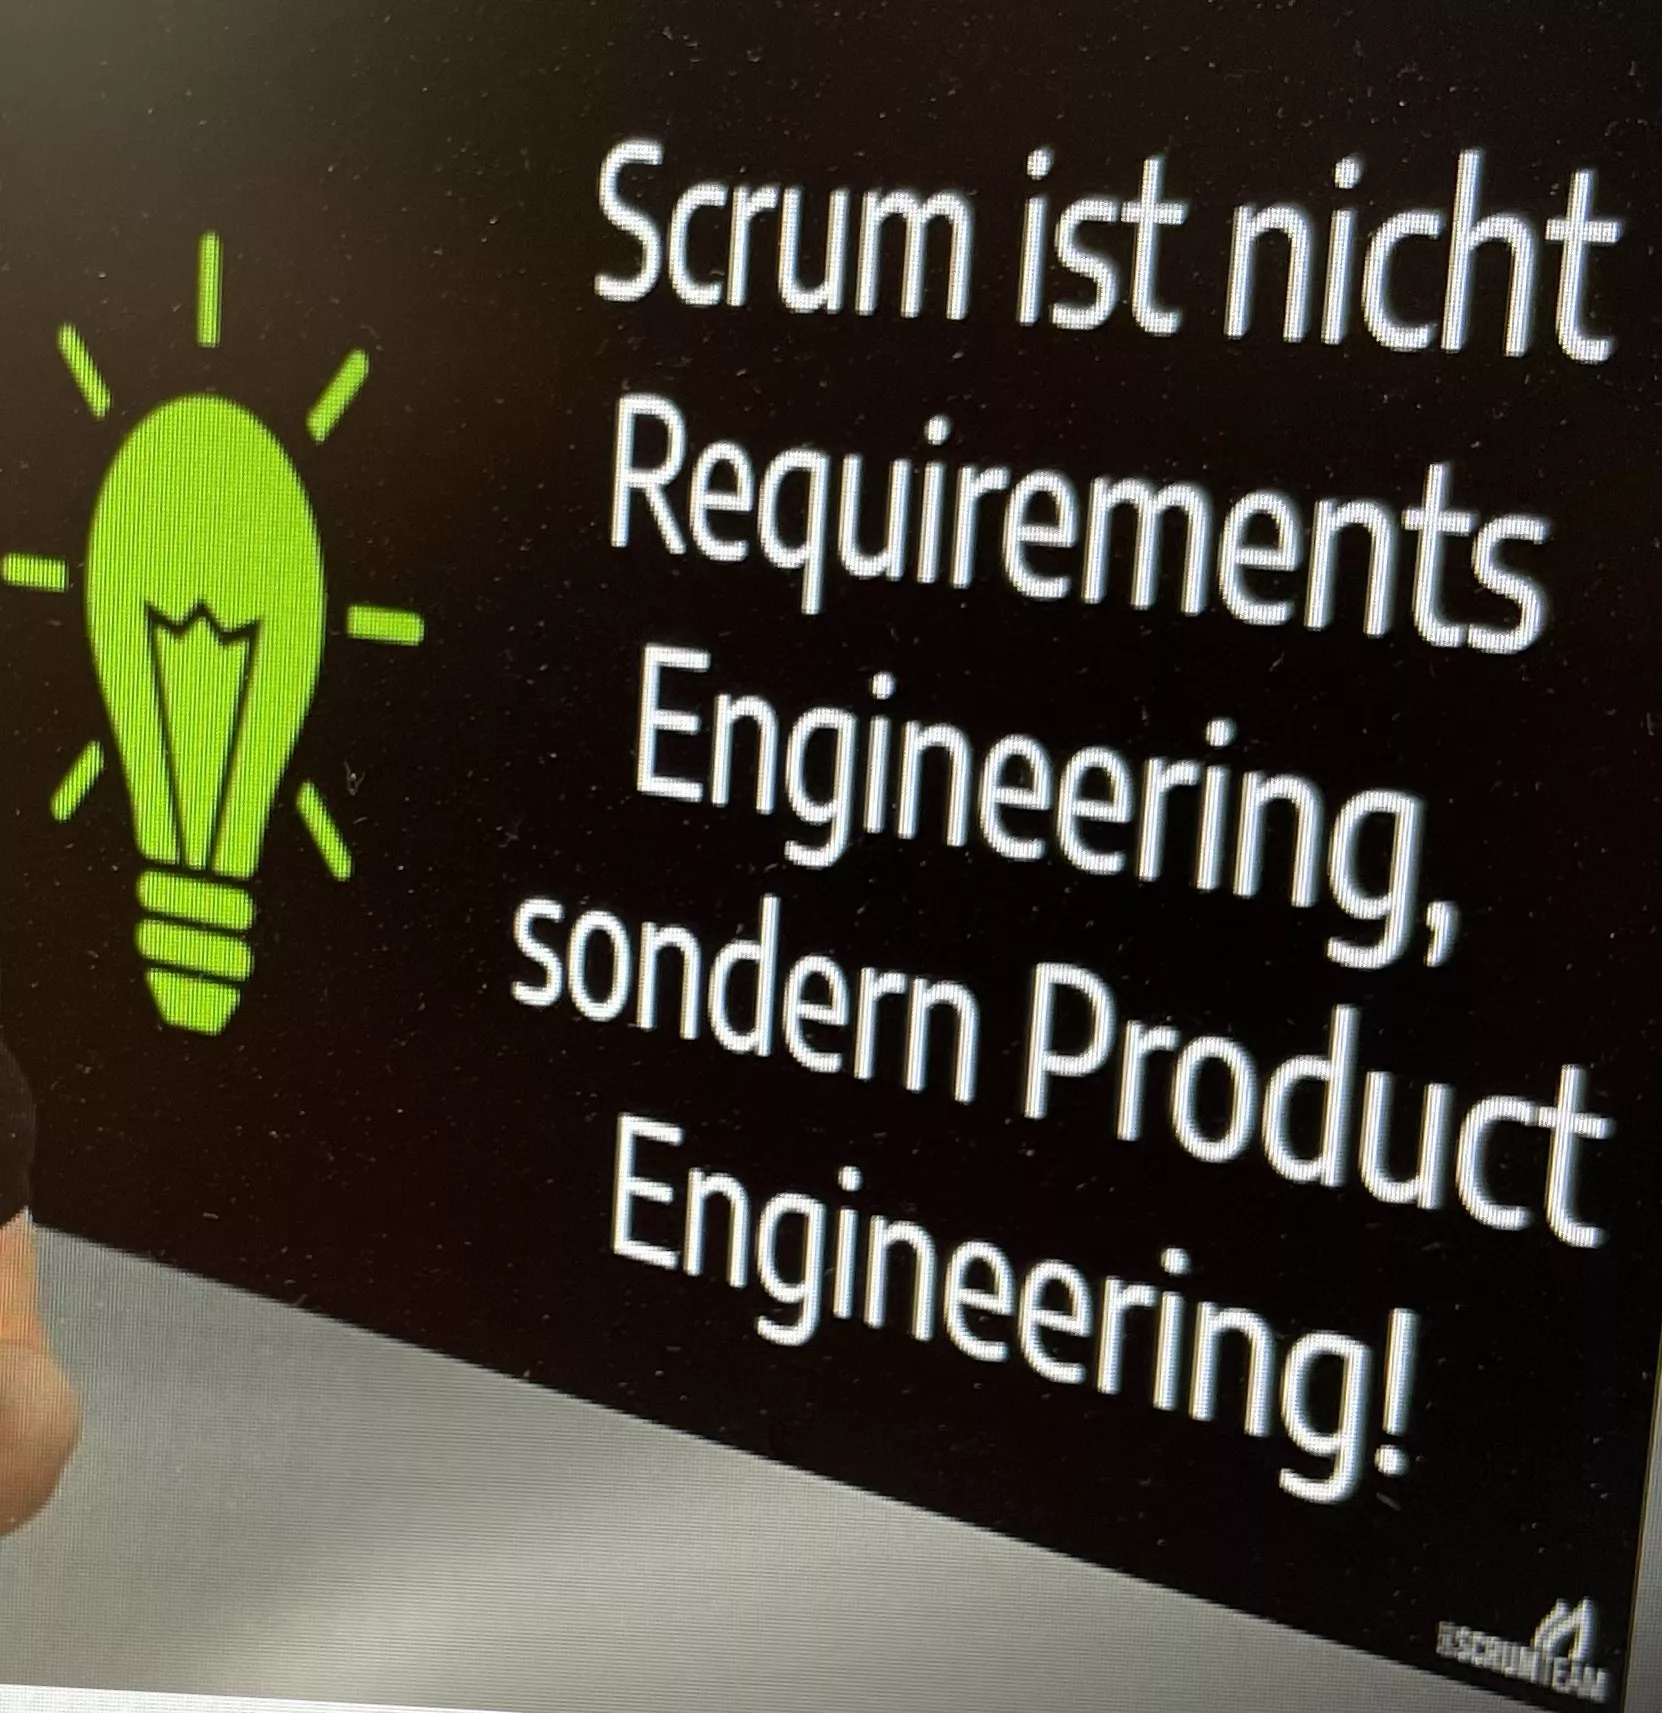 Slides aus einem Video von DasScrumTeam: Scrum ist nicht Requirements Engineering, sondern Product Engineering!